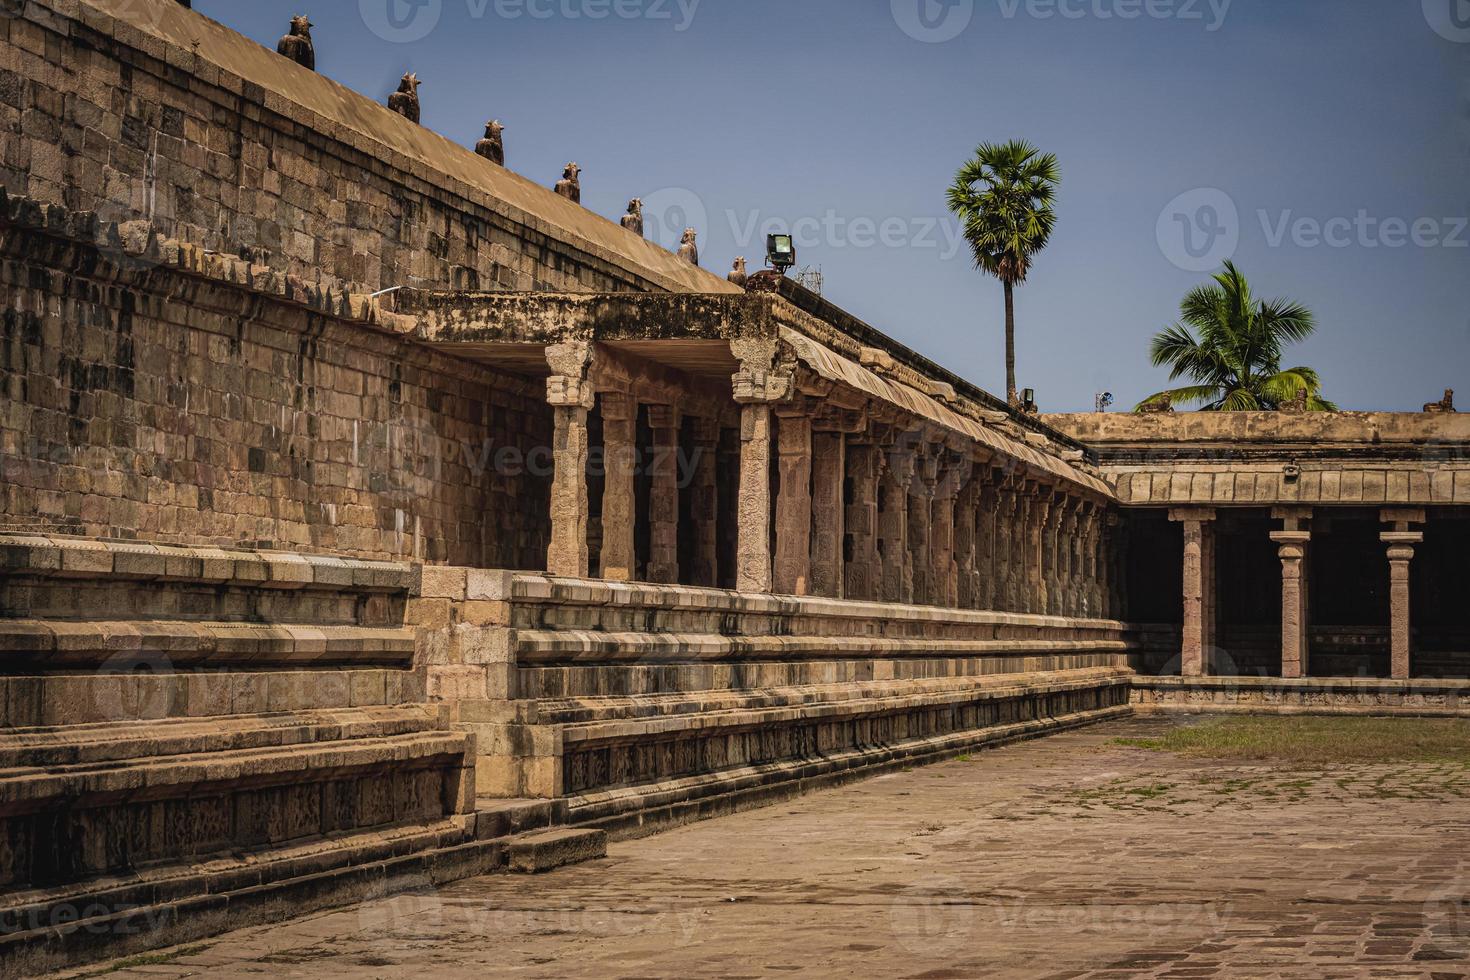 O templo shri airavatesvara é um templo hindu localizado em dharasuram, kumbakonam, tamil nadu. foi construído pelo imperador chola rajaraja-2. o templo dedicado a shiva. é um patrimônio mundial da unesco. foto